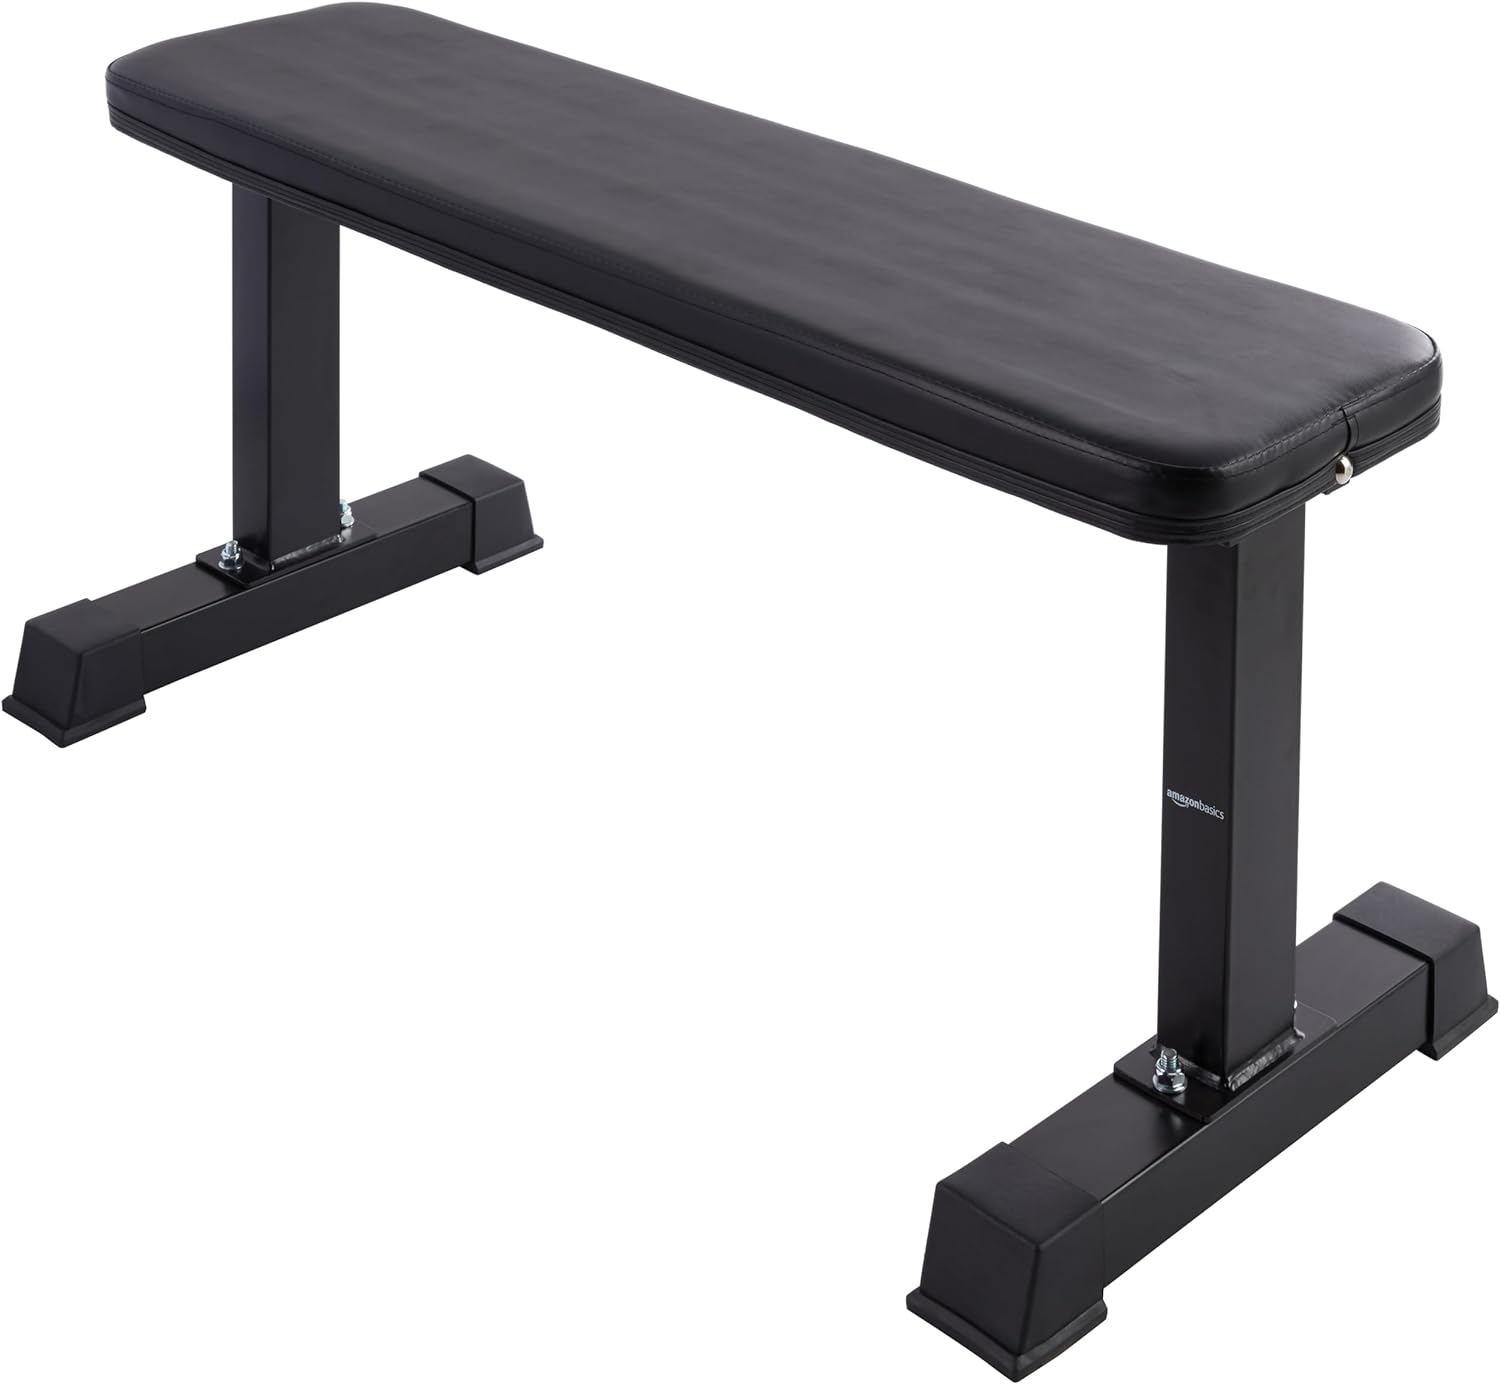 Amazon Basics weight bench